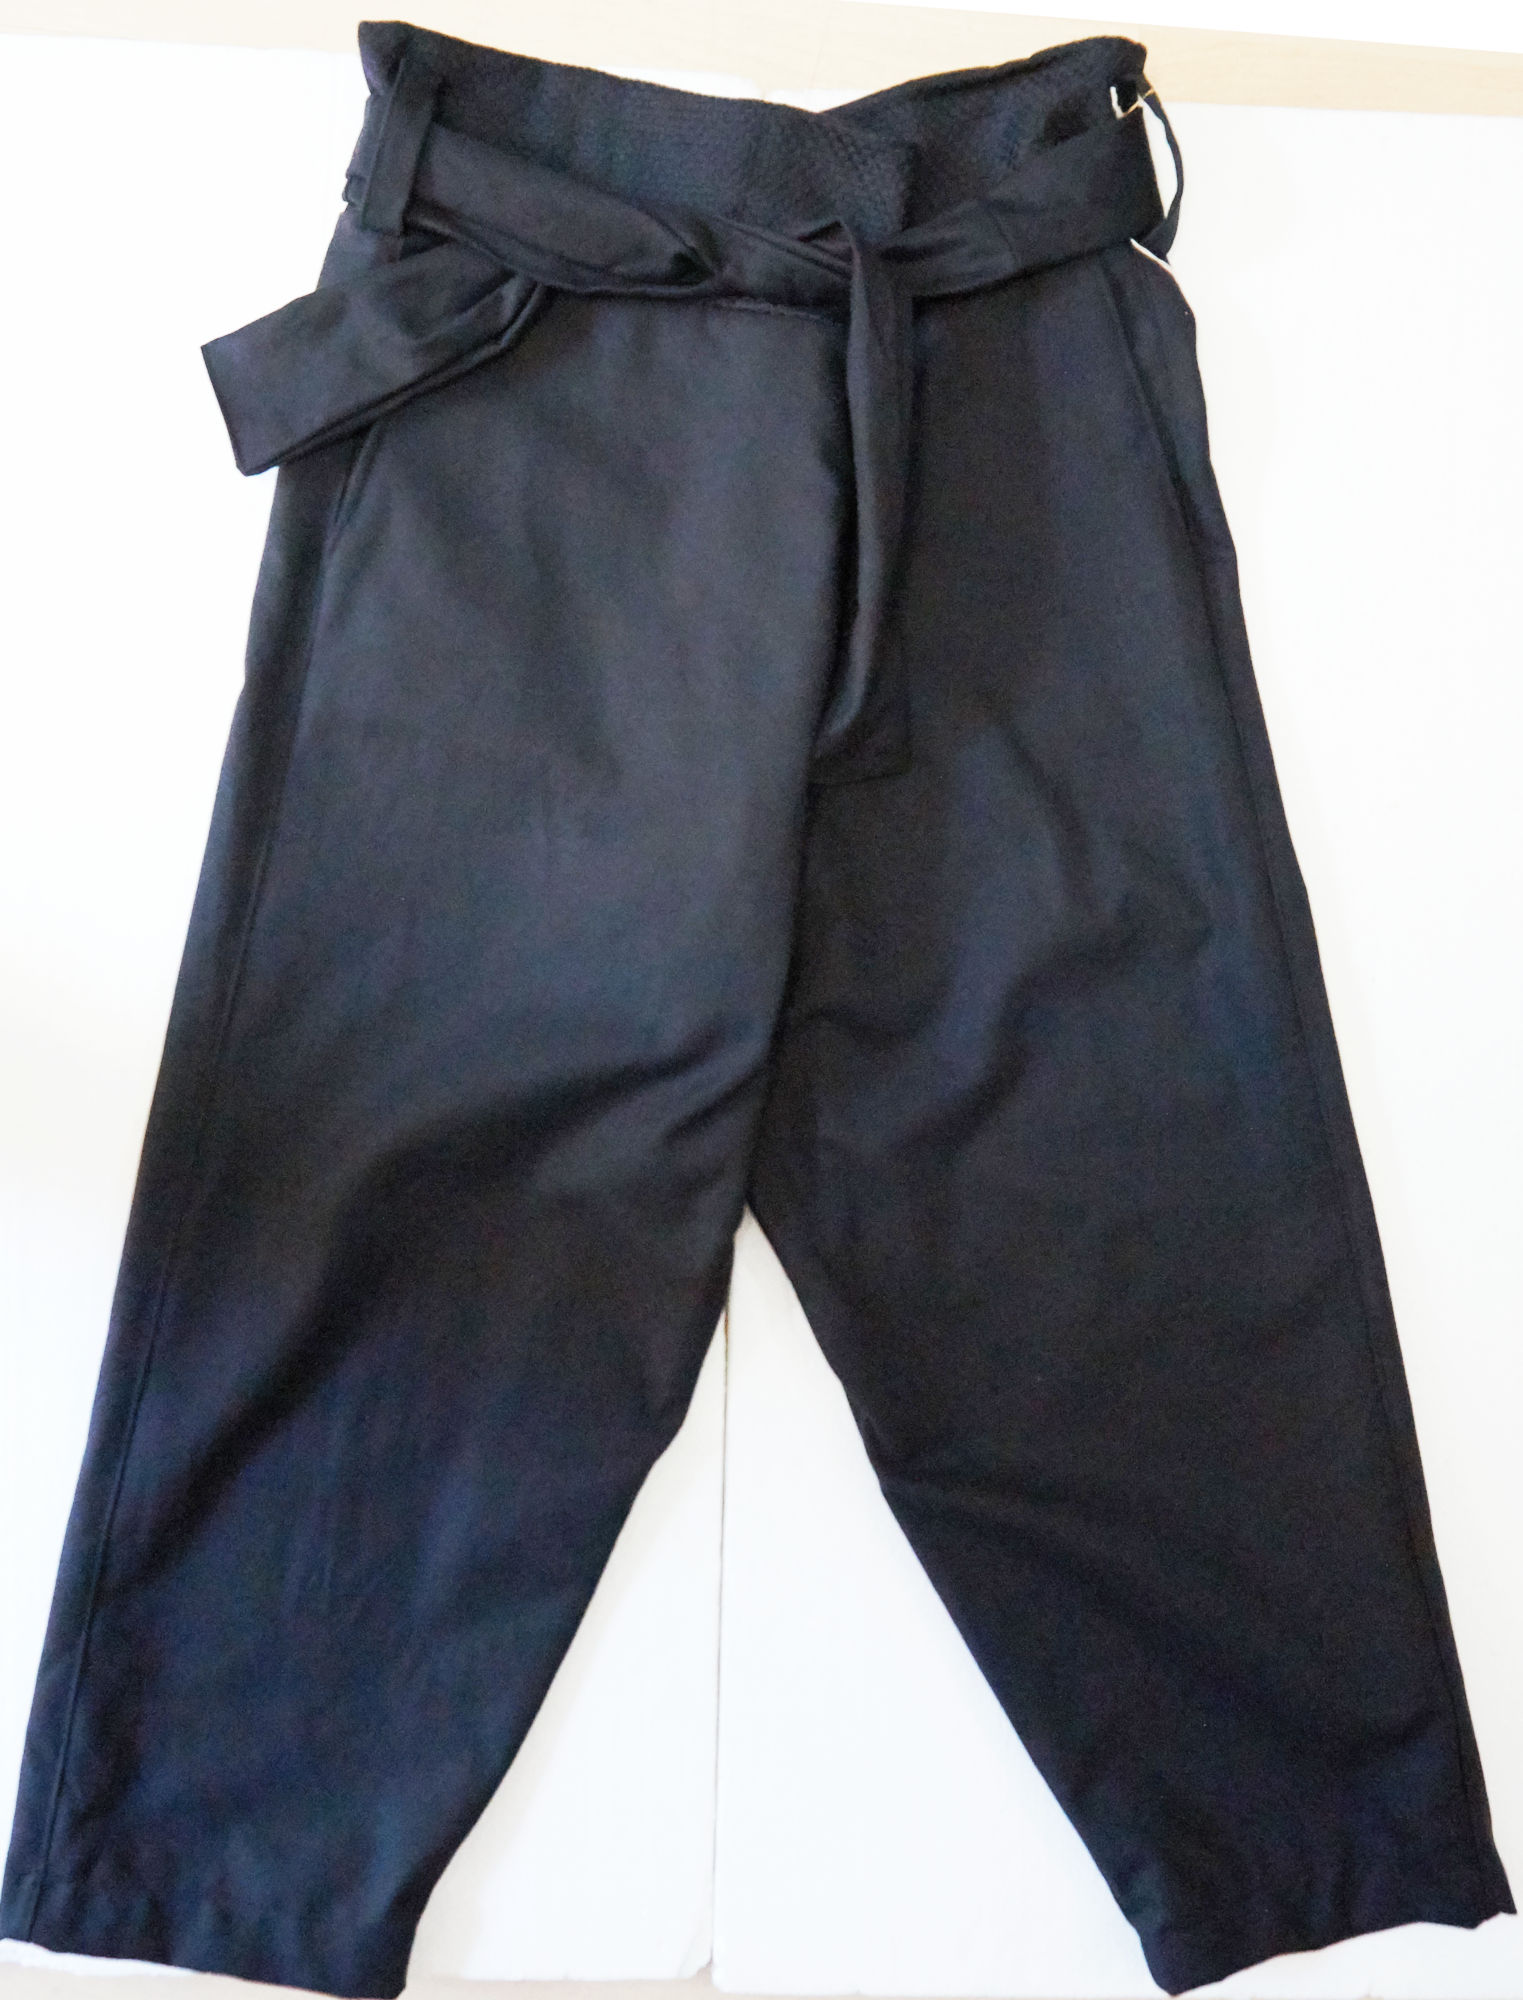 pantaloni taglia unica con lacci in cotone biologico